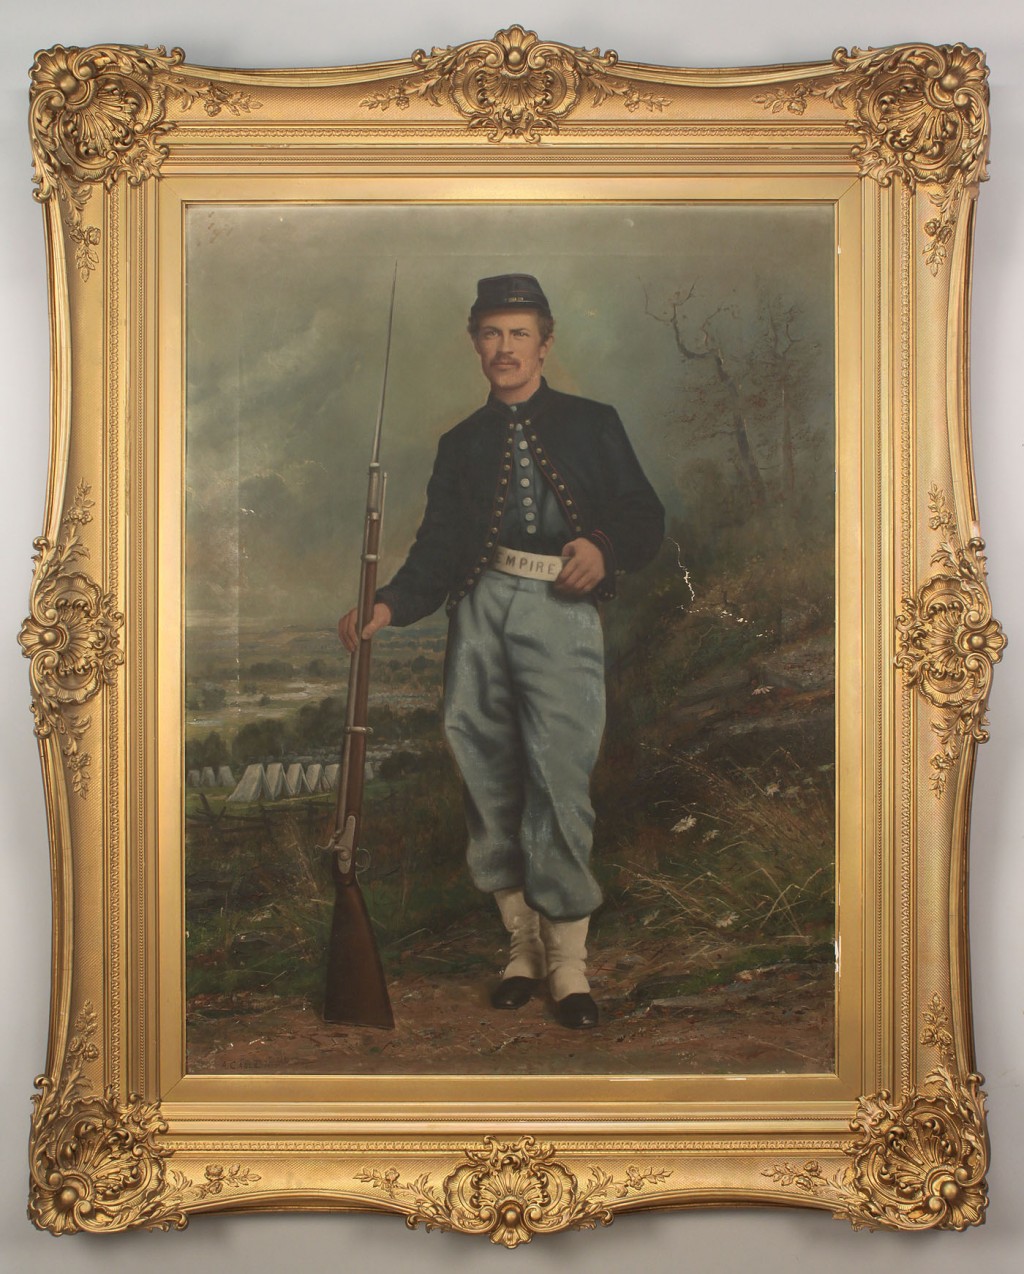 Lot 66: Large Union Civil War Portrait Oil on Canvas